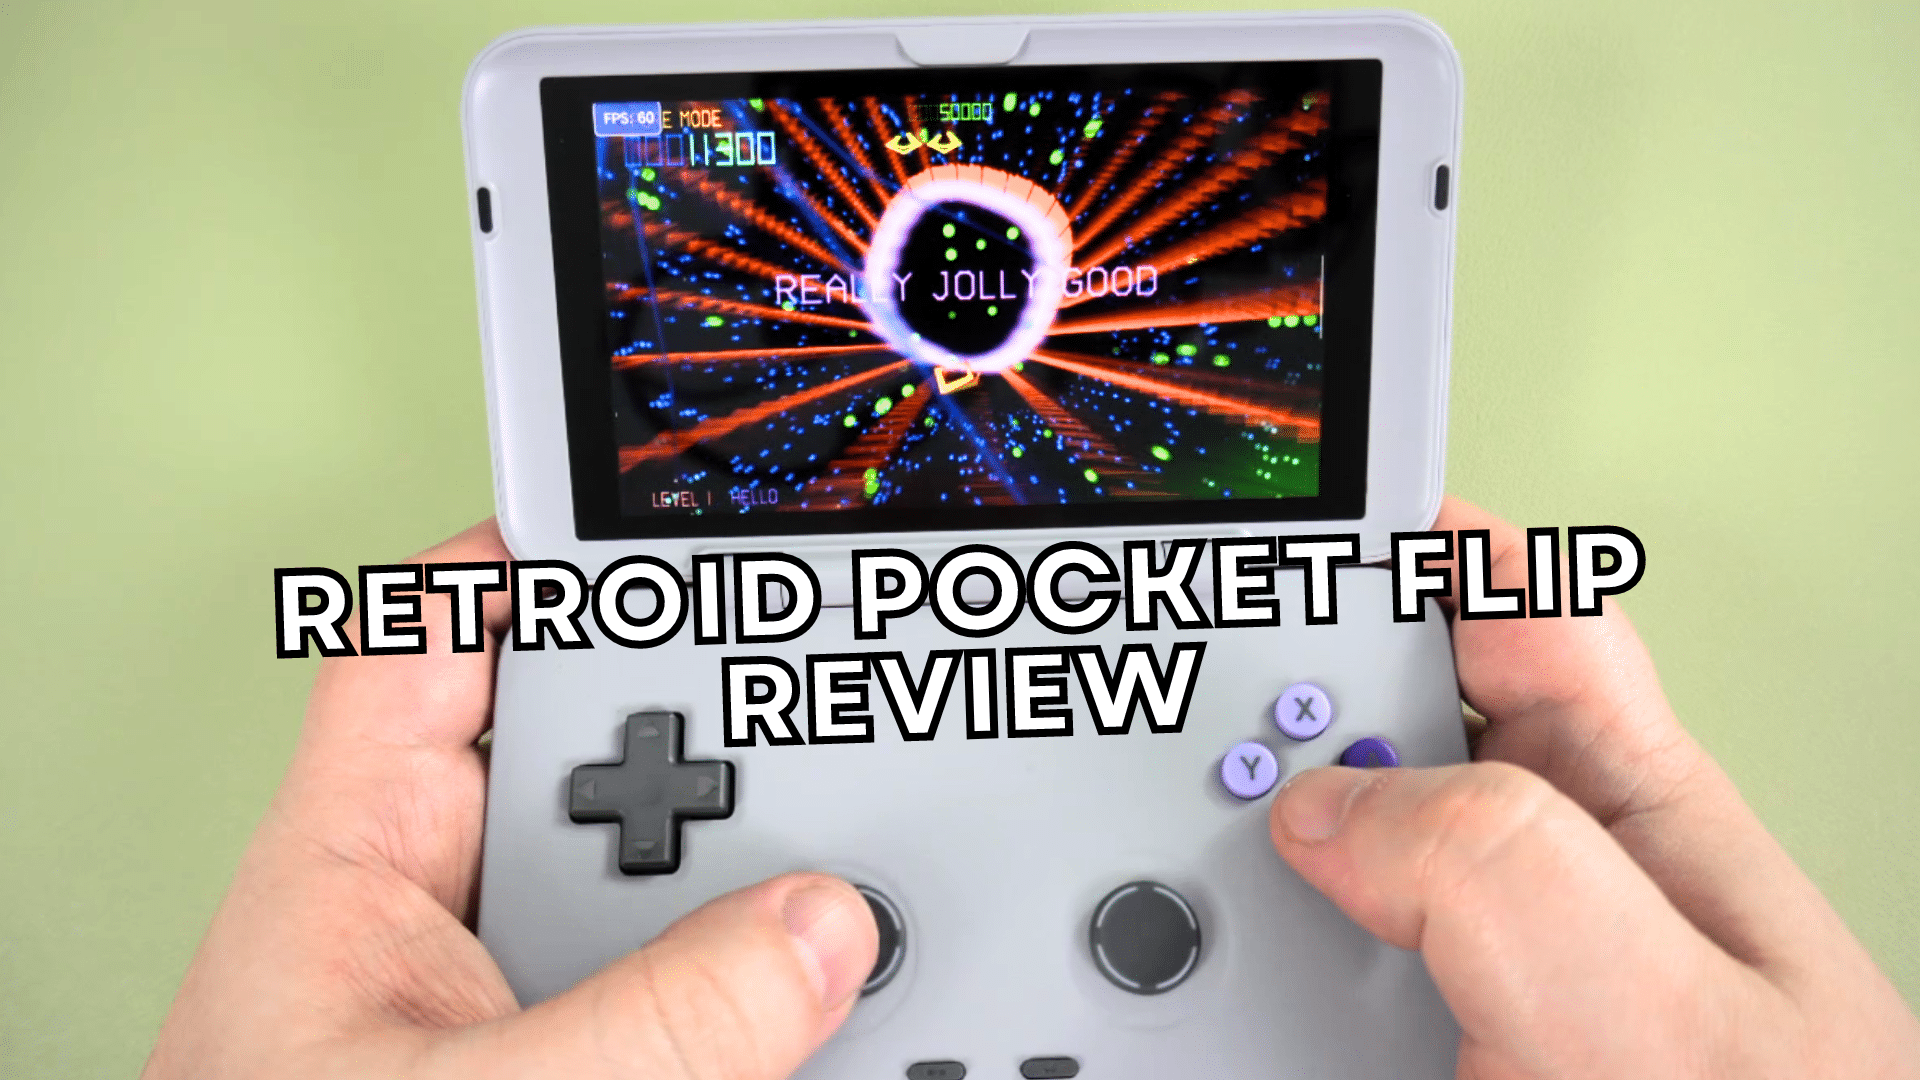 Retroid Pocket 2S Review - A retro gaming handheld where nostalgia